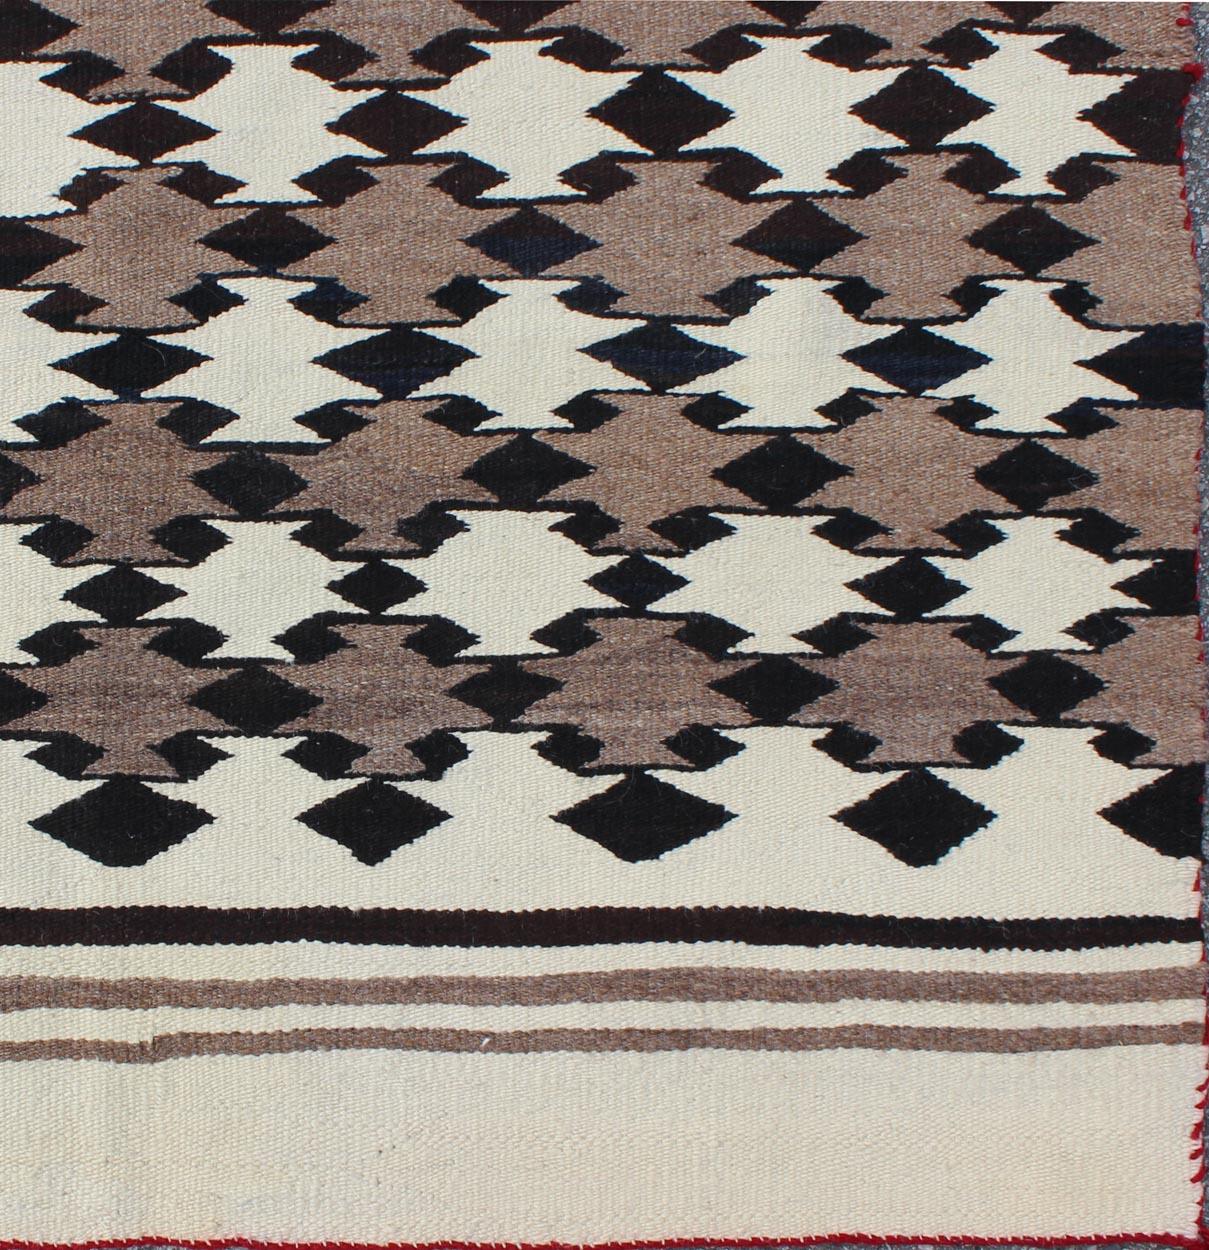 Amerikanischer Navajo-Teppich mit Gitterwerk-Stammesmuster, Teppich I-1101, Herkunftsland / Art: Nordamerika / Navajo, um 1950 Anfang 20.

Maße: 3'3'' x 5'2''.

Dieser faszinierende Navajo-Teppich wurde in der Mitte des 20. Jahrhunderts in den